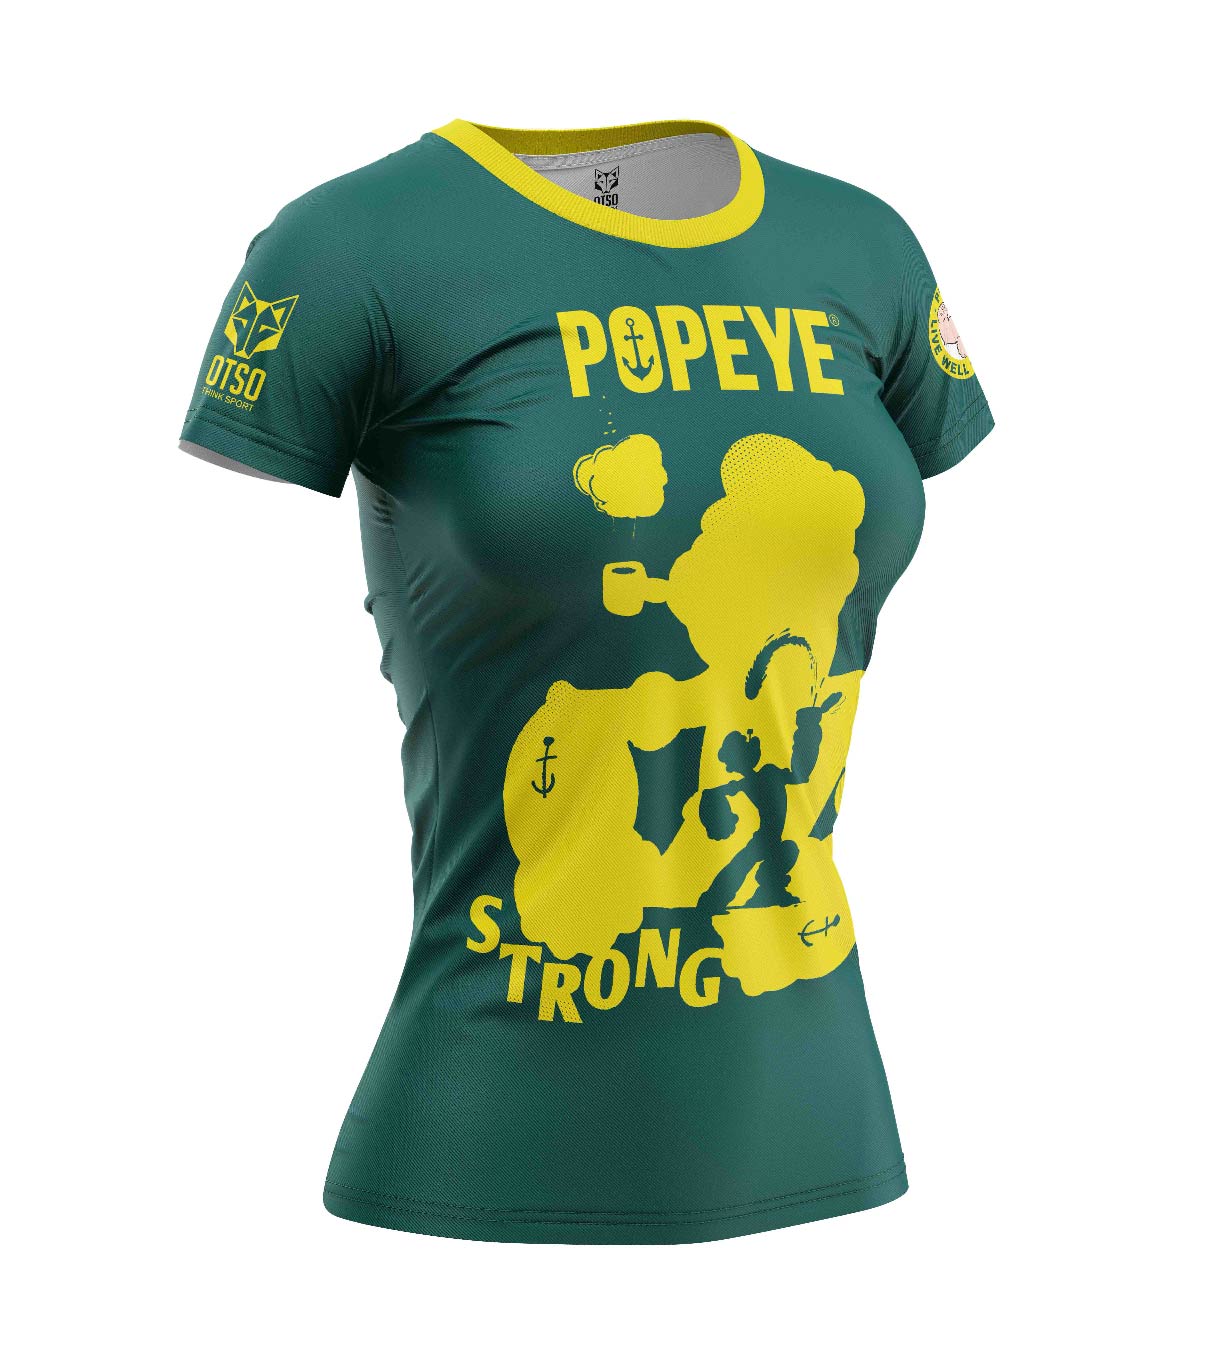 Women's Short Sleeve T-shirt - Popeye Strong